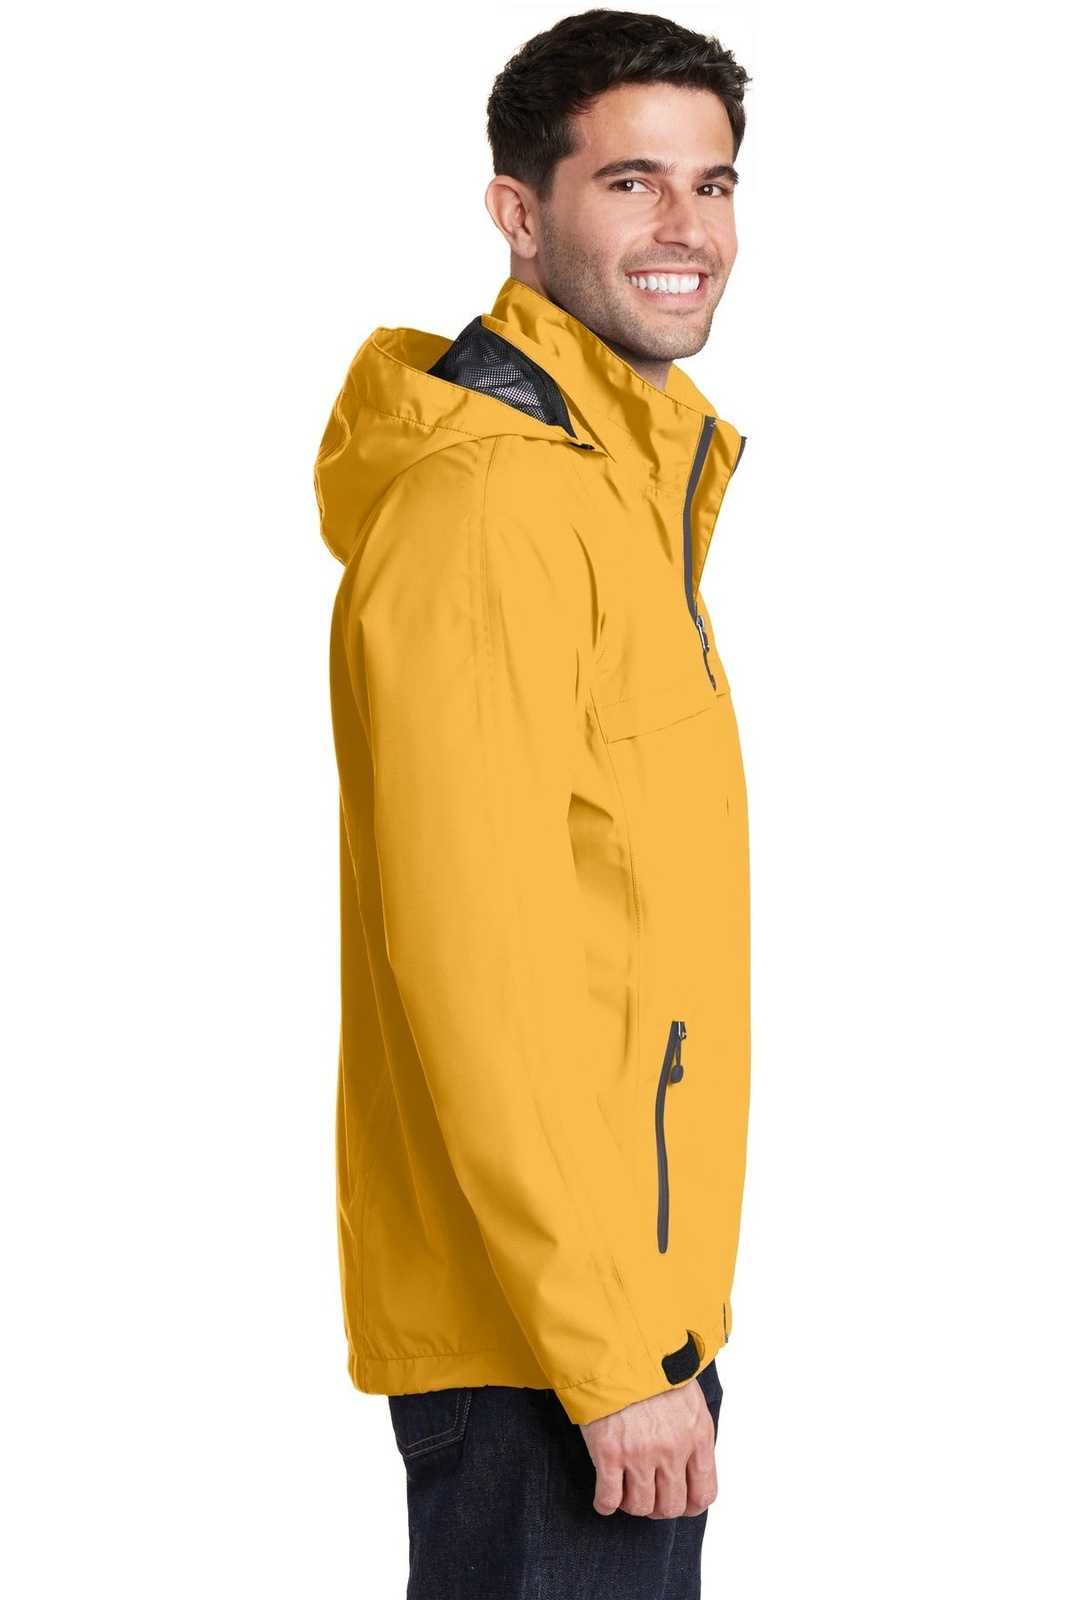 Port Authority J333 Torrent Waterproof Jacket - Slicker Yellow - HIT a Double - 3